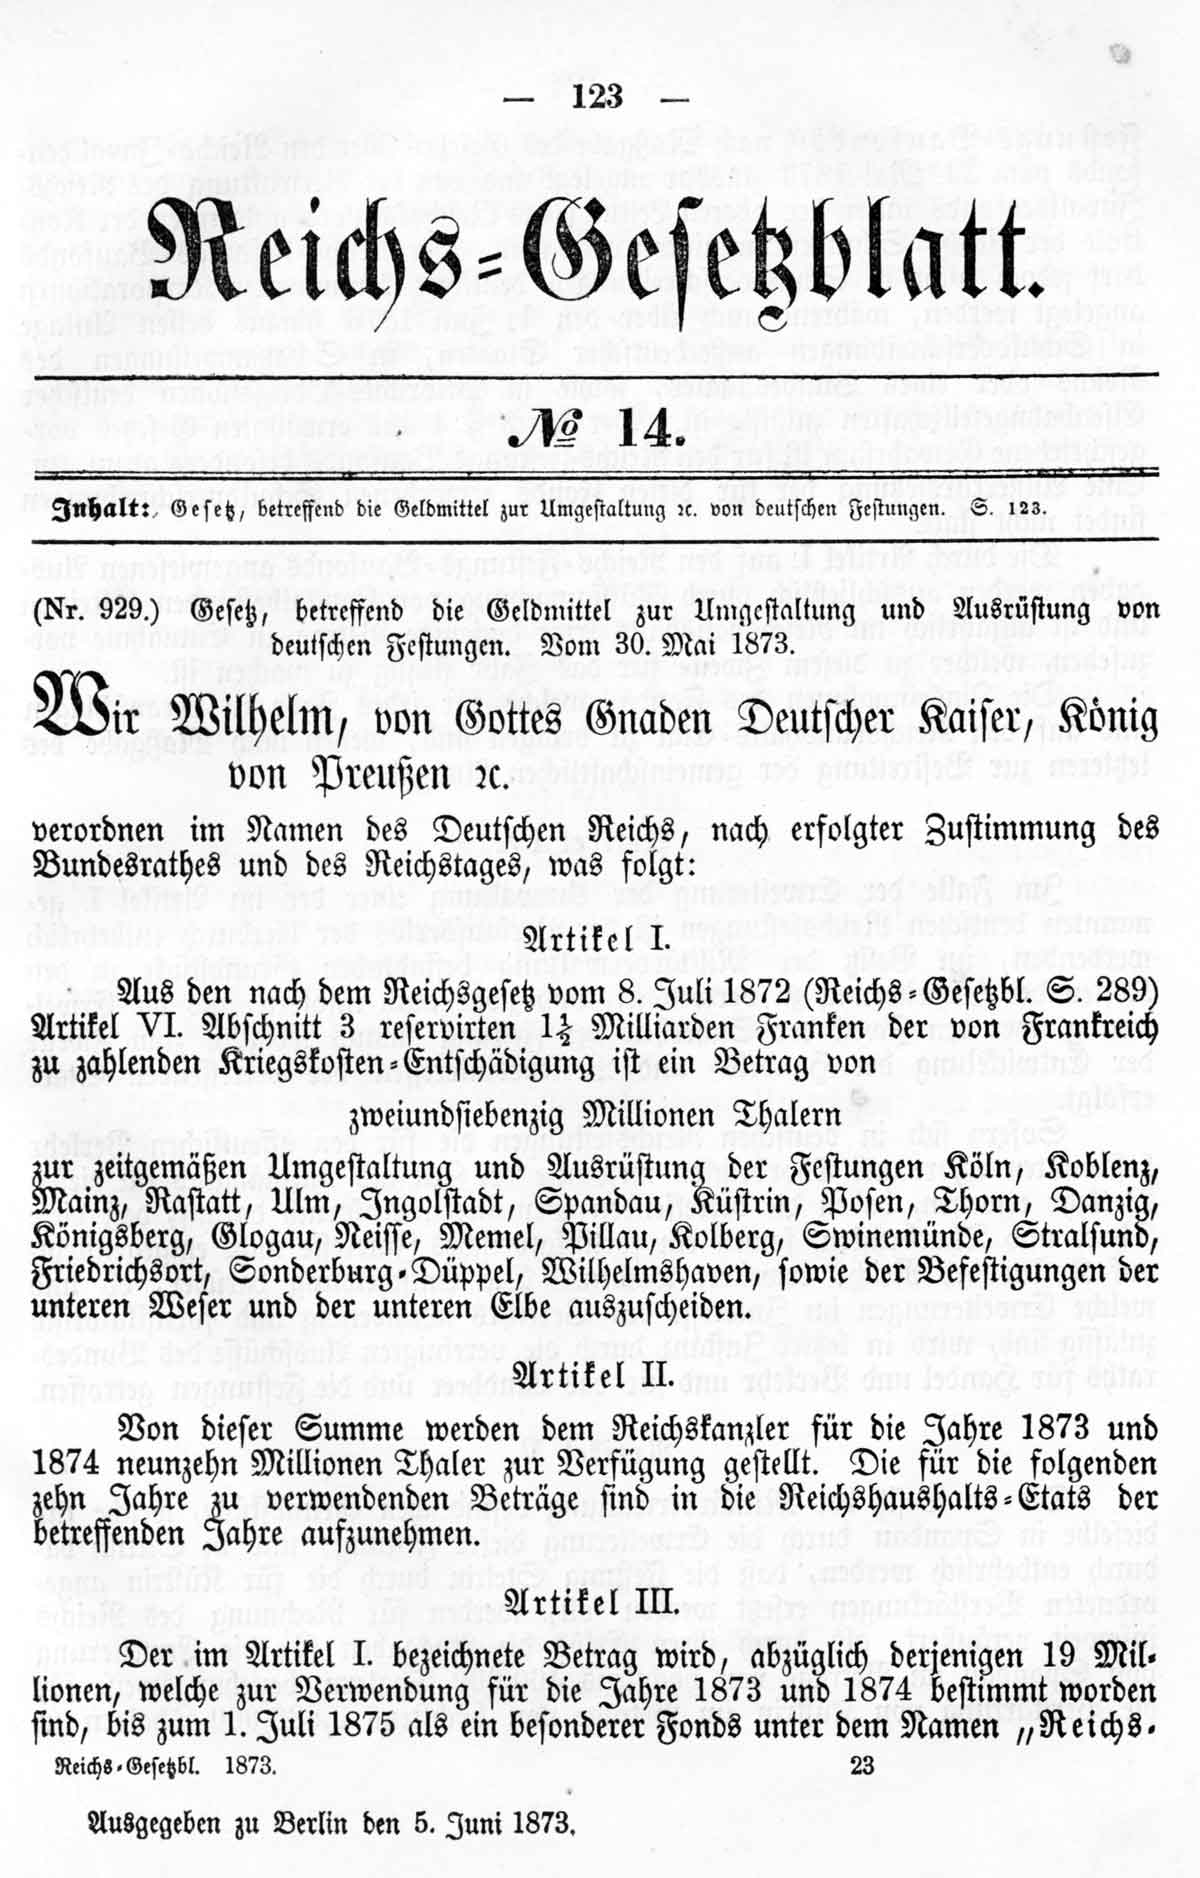 Deutsches Reichs-Gesetzblatt No. 14 vom 30. Mai 1873, Seite 123